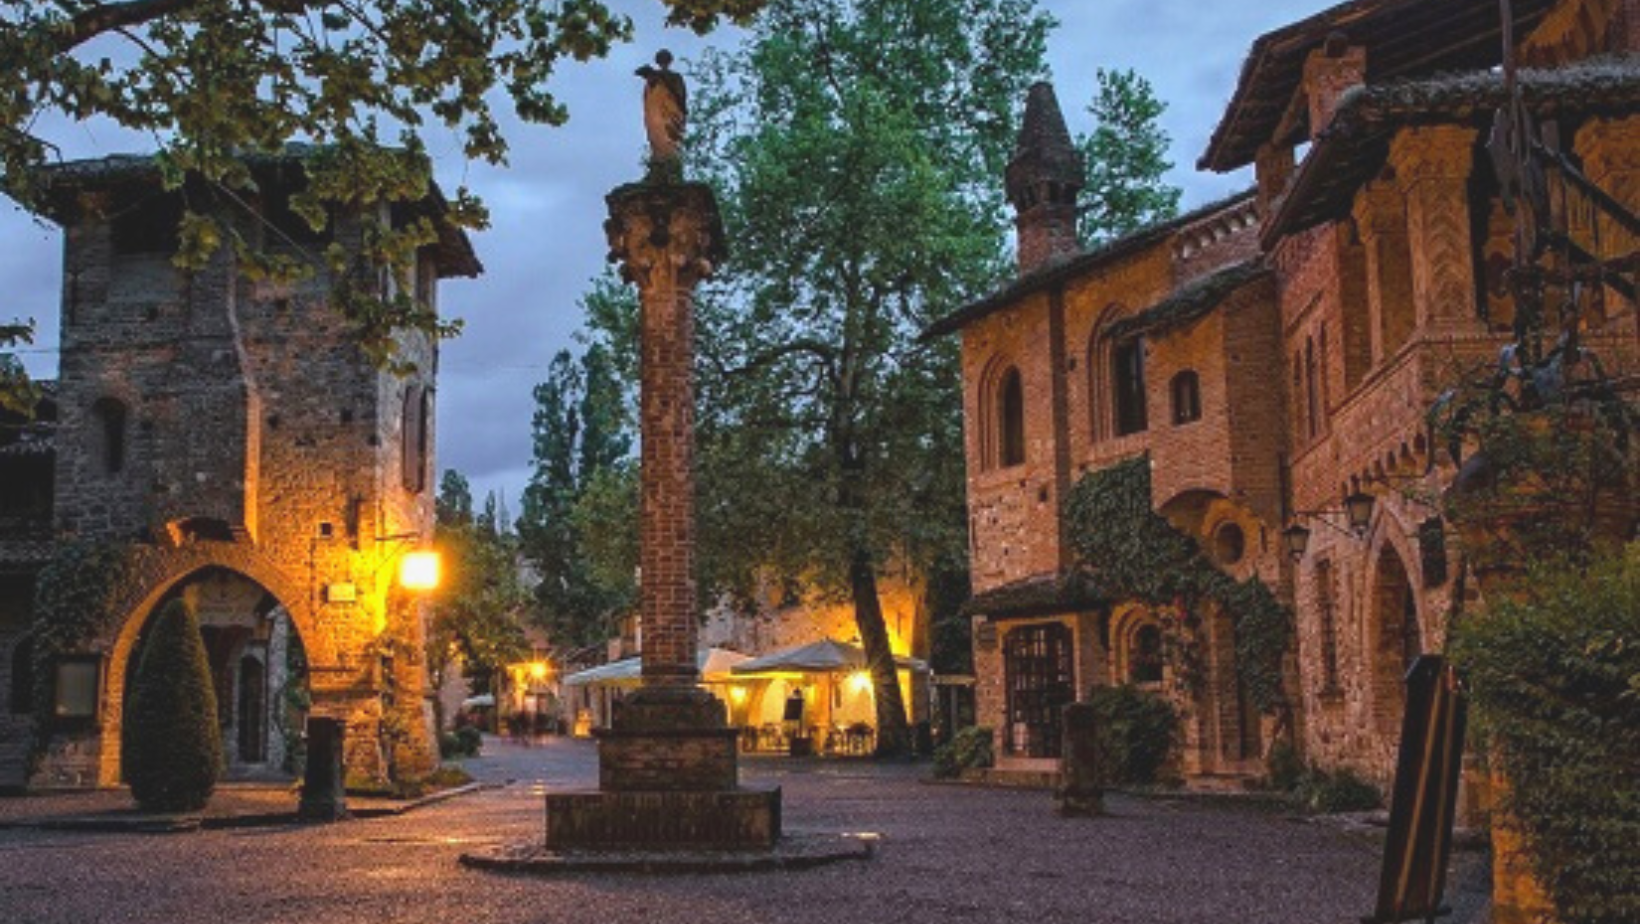 La notte dei Cavalieri 2022 nel borgo medievale di Grazzano Visconti